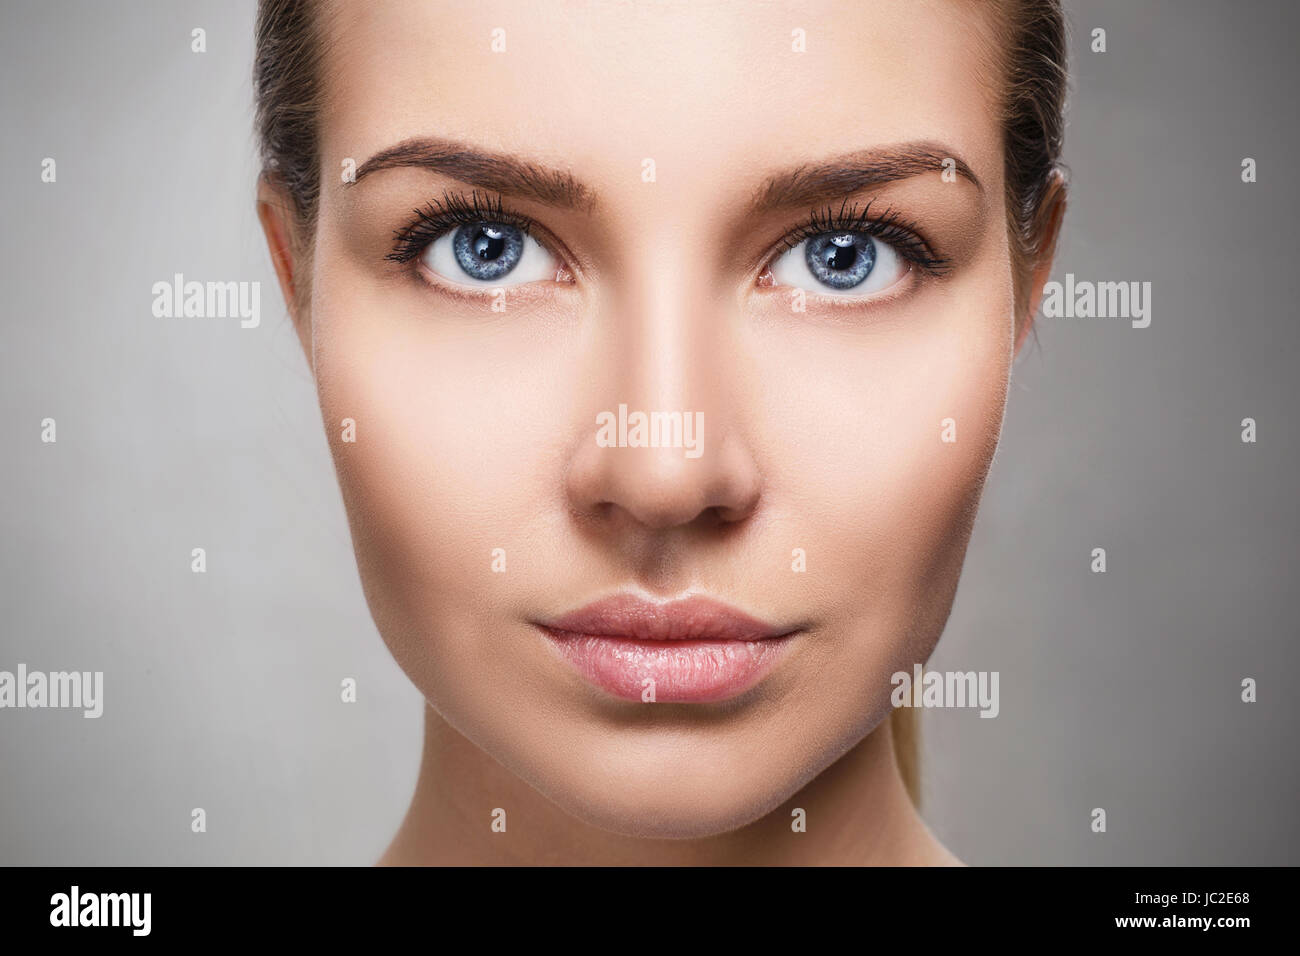 Schönes Gesicht der jungen Frau mit perfekter Haut und Make-up. Frische Haut Nahaufnahme auf grauem Hintergrund. Beauty Portrait. Stockfoto